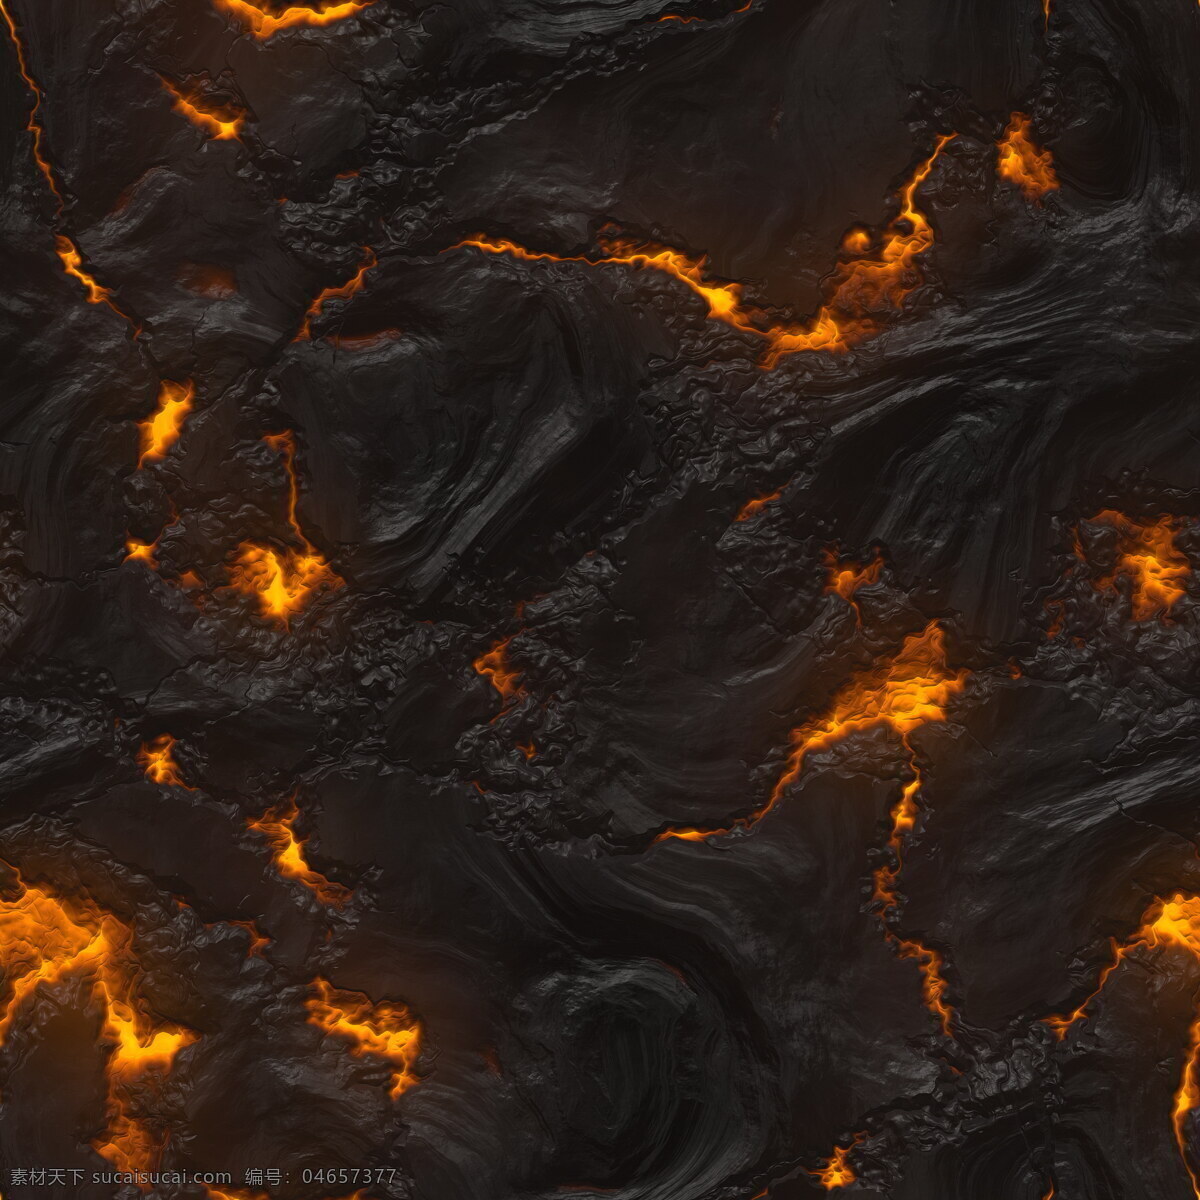 岩浆 火山熔岩 熔岩浆 熔岩 火焰 火苗 泥浆 火山 爆发 地质景观 地理 地貌 地况 地质 地面 自然景观